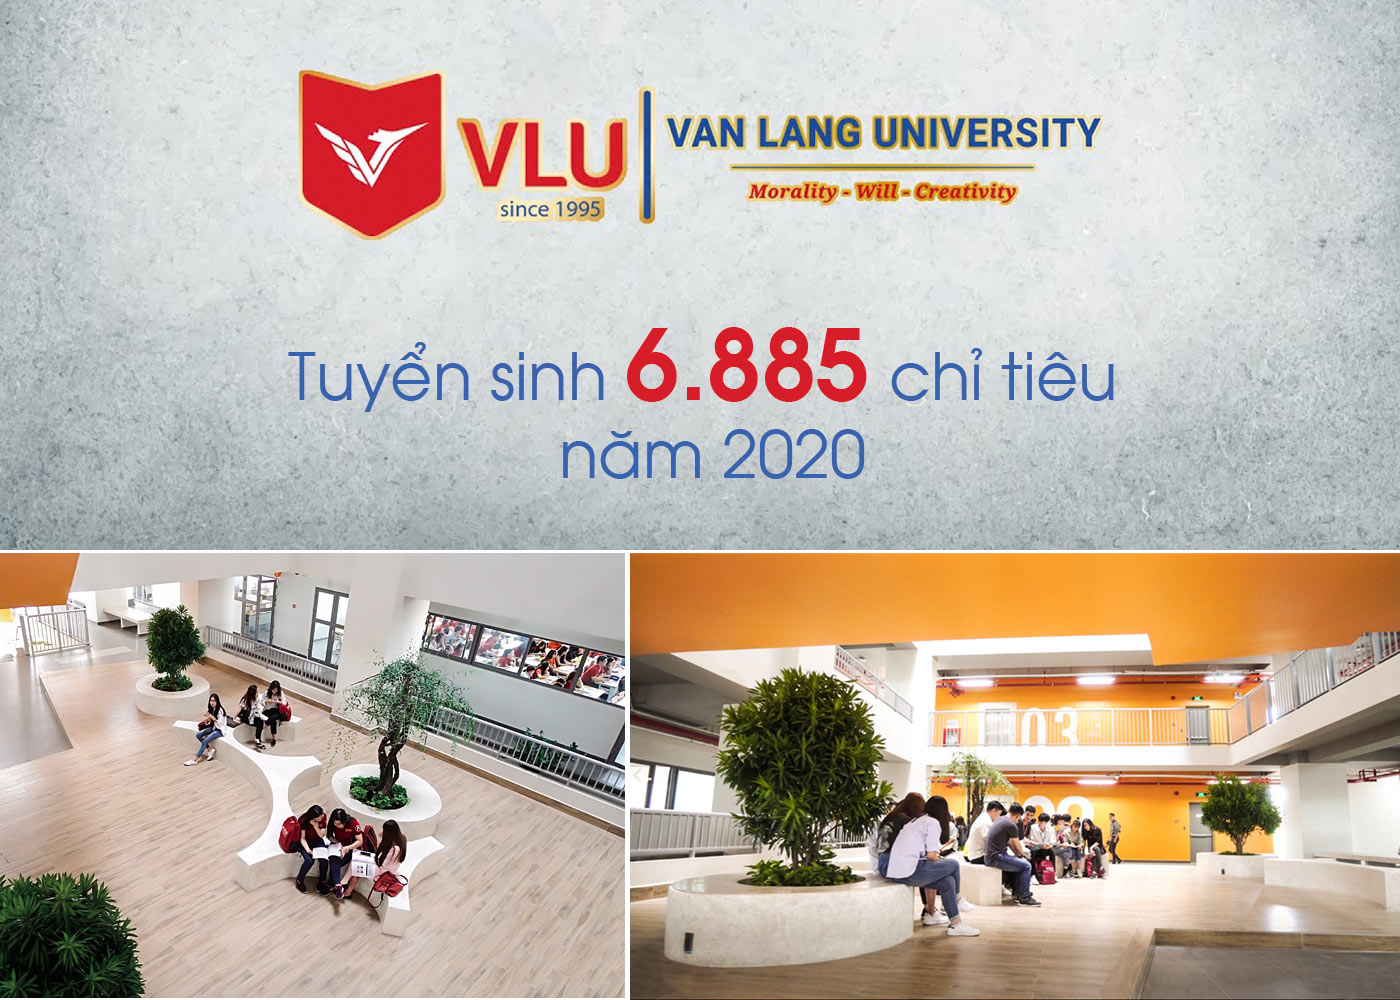 Trường ĐH Văn Lang tuyển sinh 6.885 chỉ tiêu năm 2020 - Ảnh 1